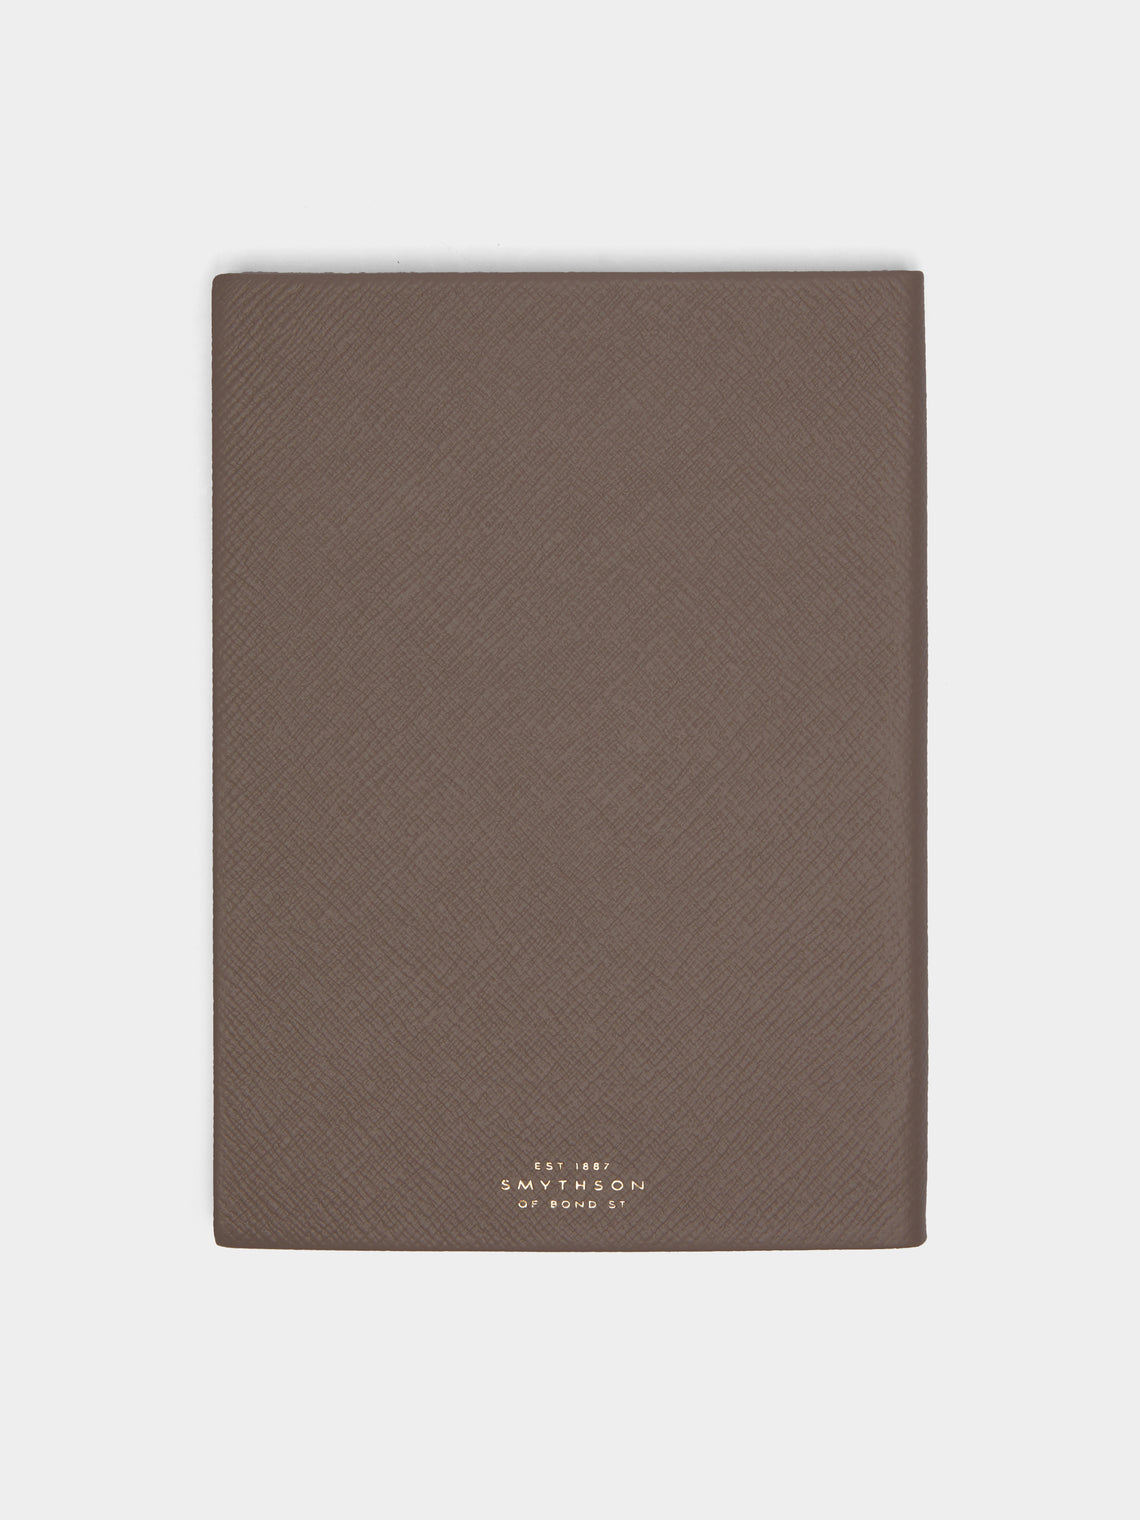 Smythson - Soho Leather Notebook - Taupe - ABASK